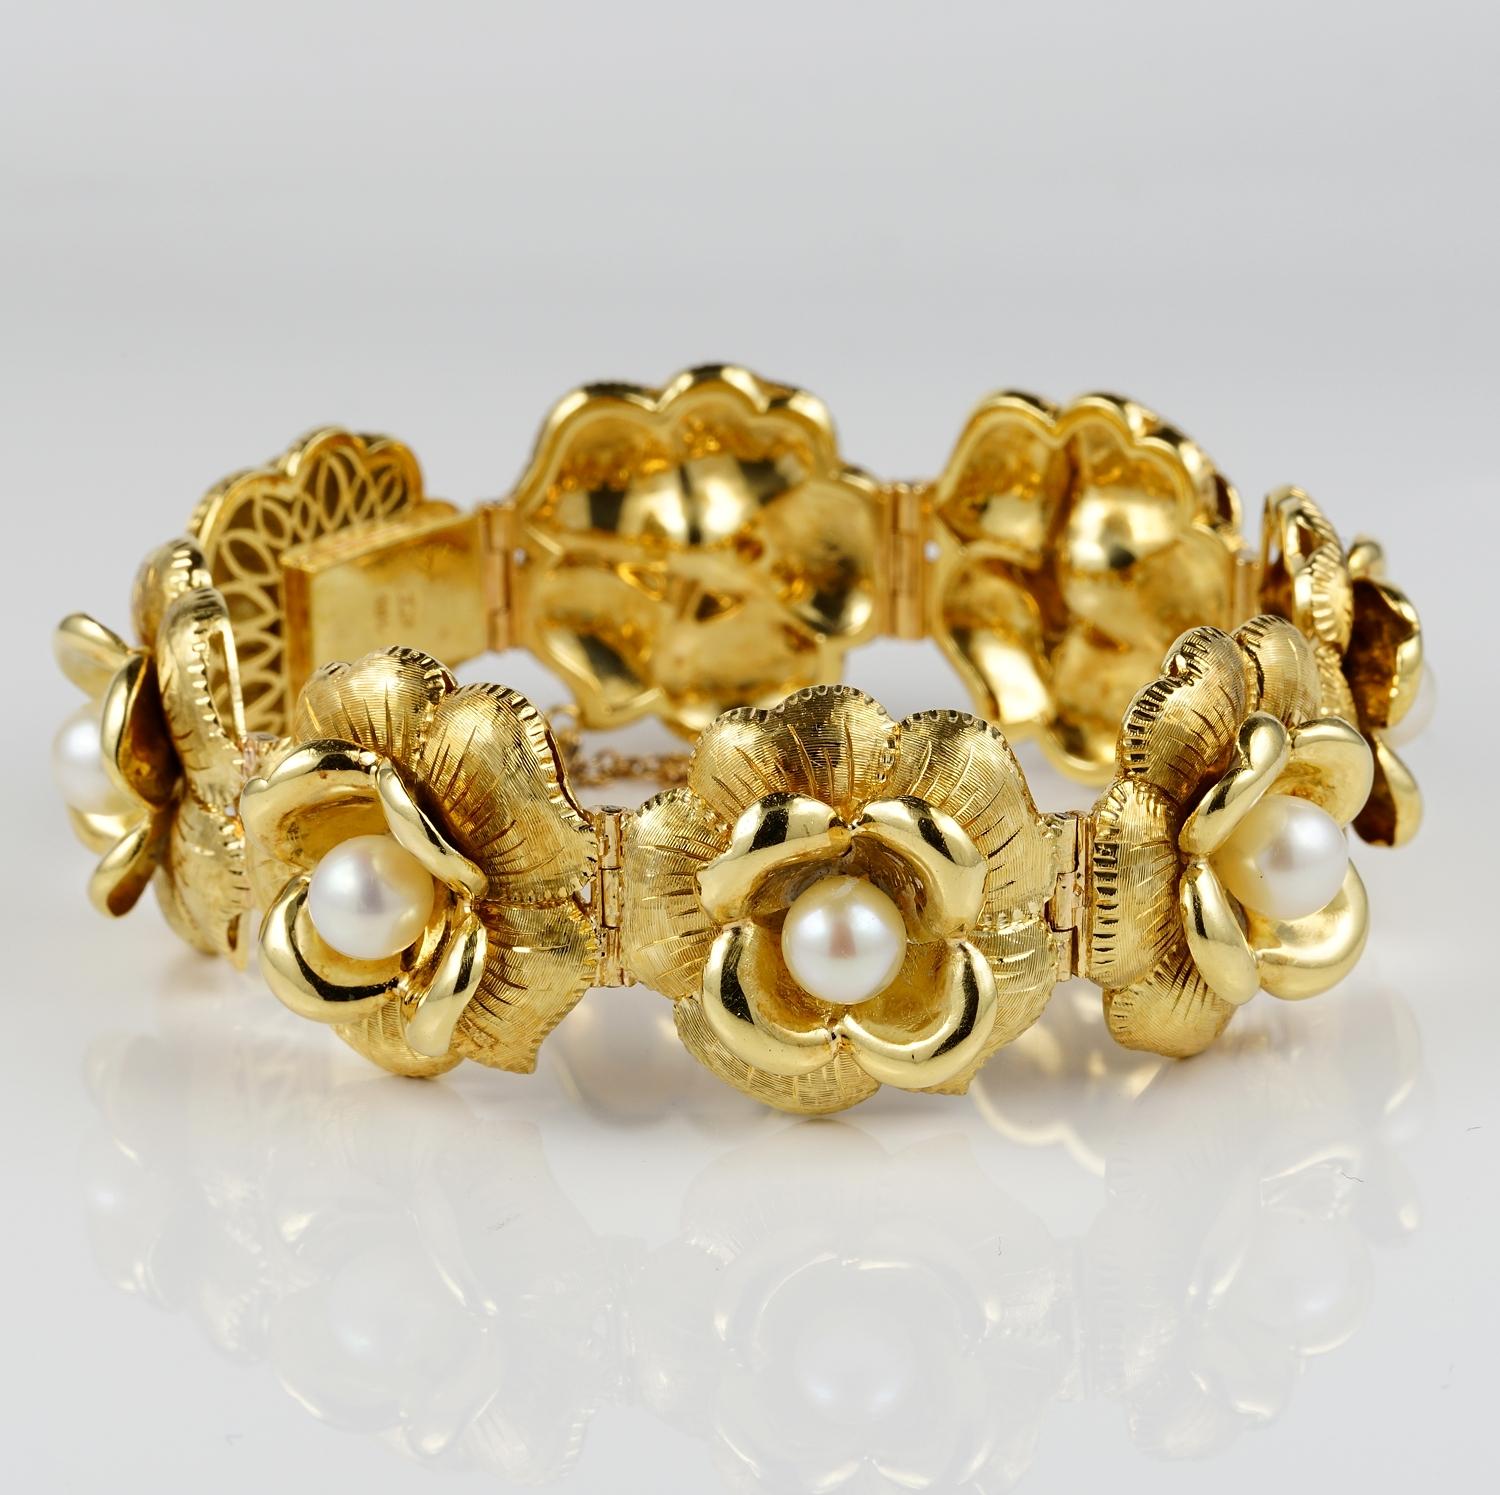 Charmant handgefertigt in den späten 1940er Jahren, modelliert mit einer durchgehenden Linie von dreidimensionalen Blumen mit Satin-, Schnitz- und Polierdetails für einen einzigartigen Effekt, überfüllt mit Perlen
Einfach zu tragen und mit Ihrer